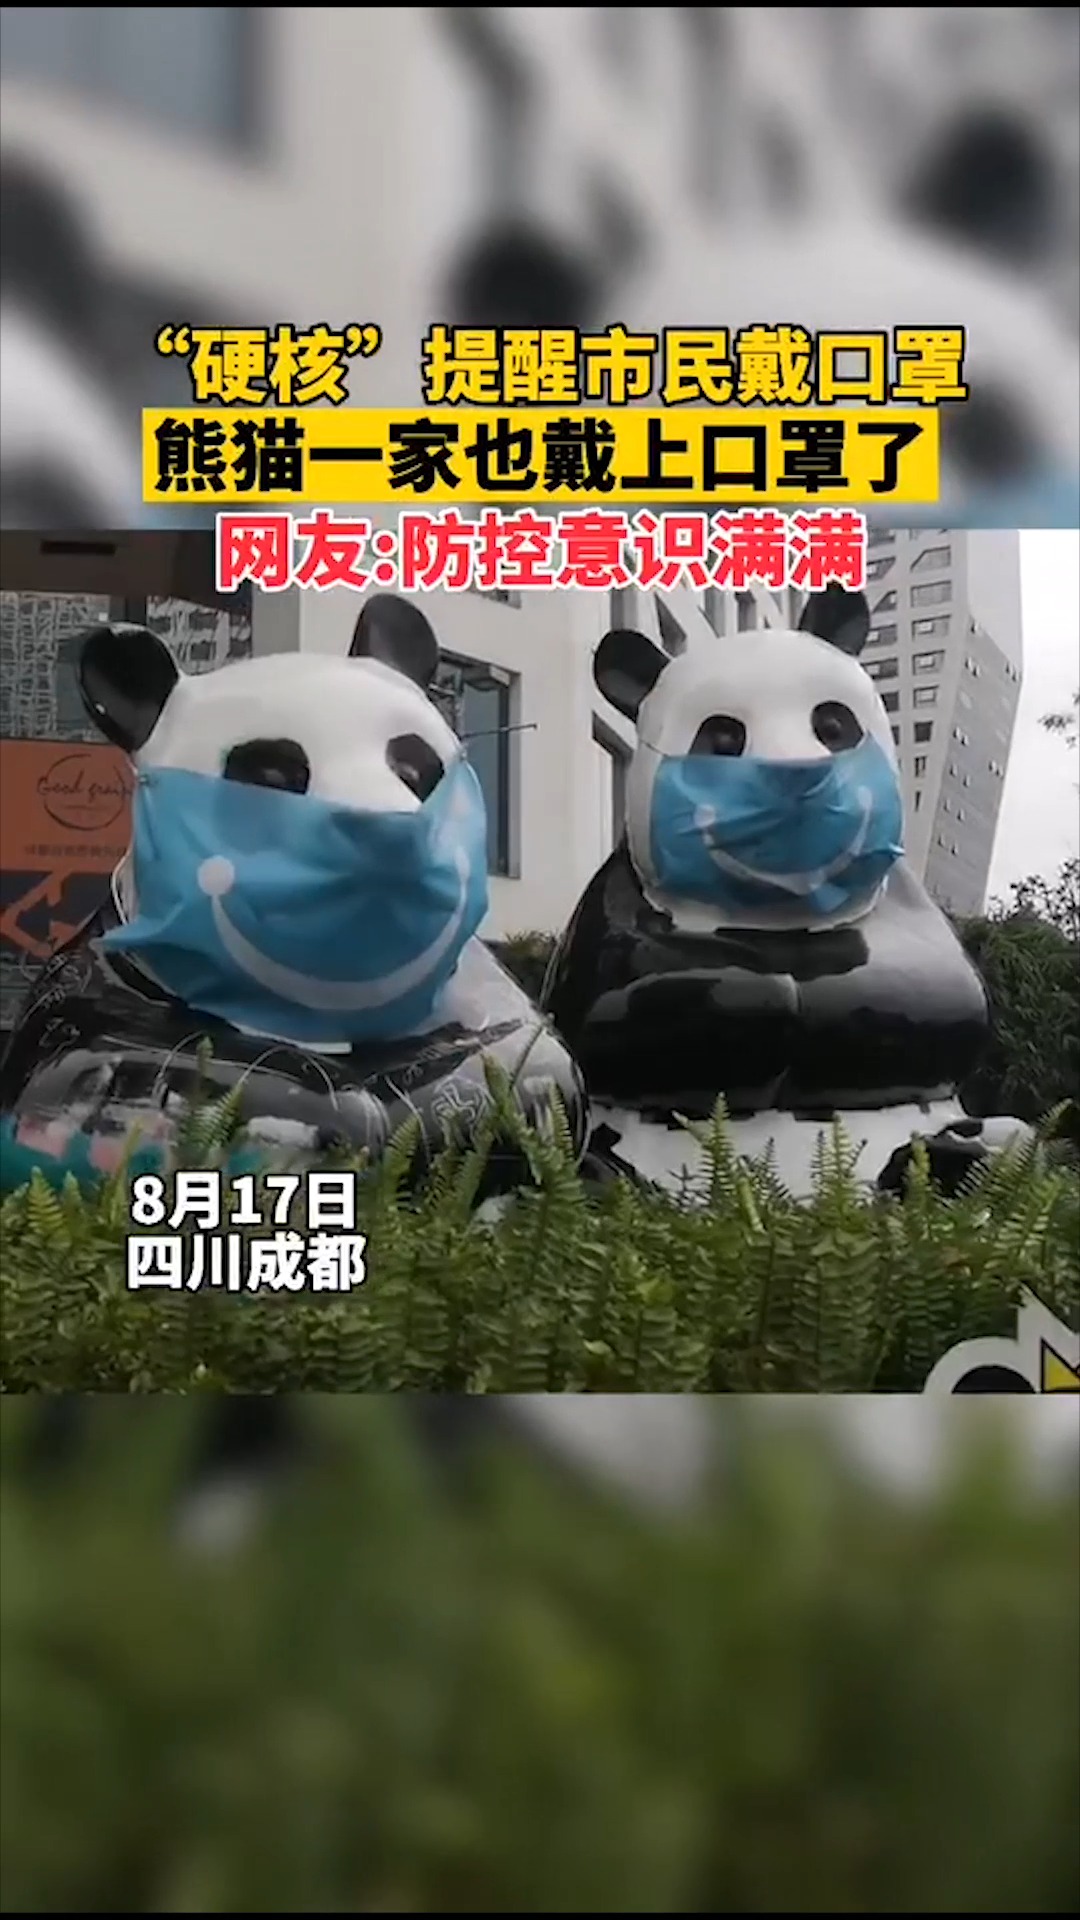 全民防疫硬核提醒市民戴口罩熊猫一家也带上口罩了网友防控意识满满